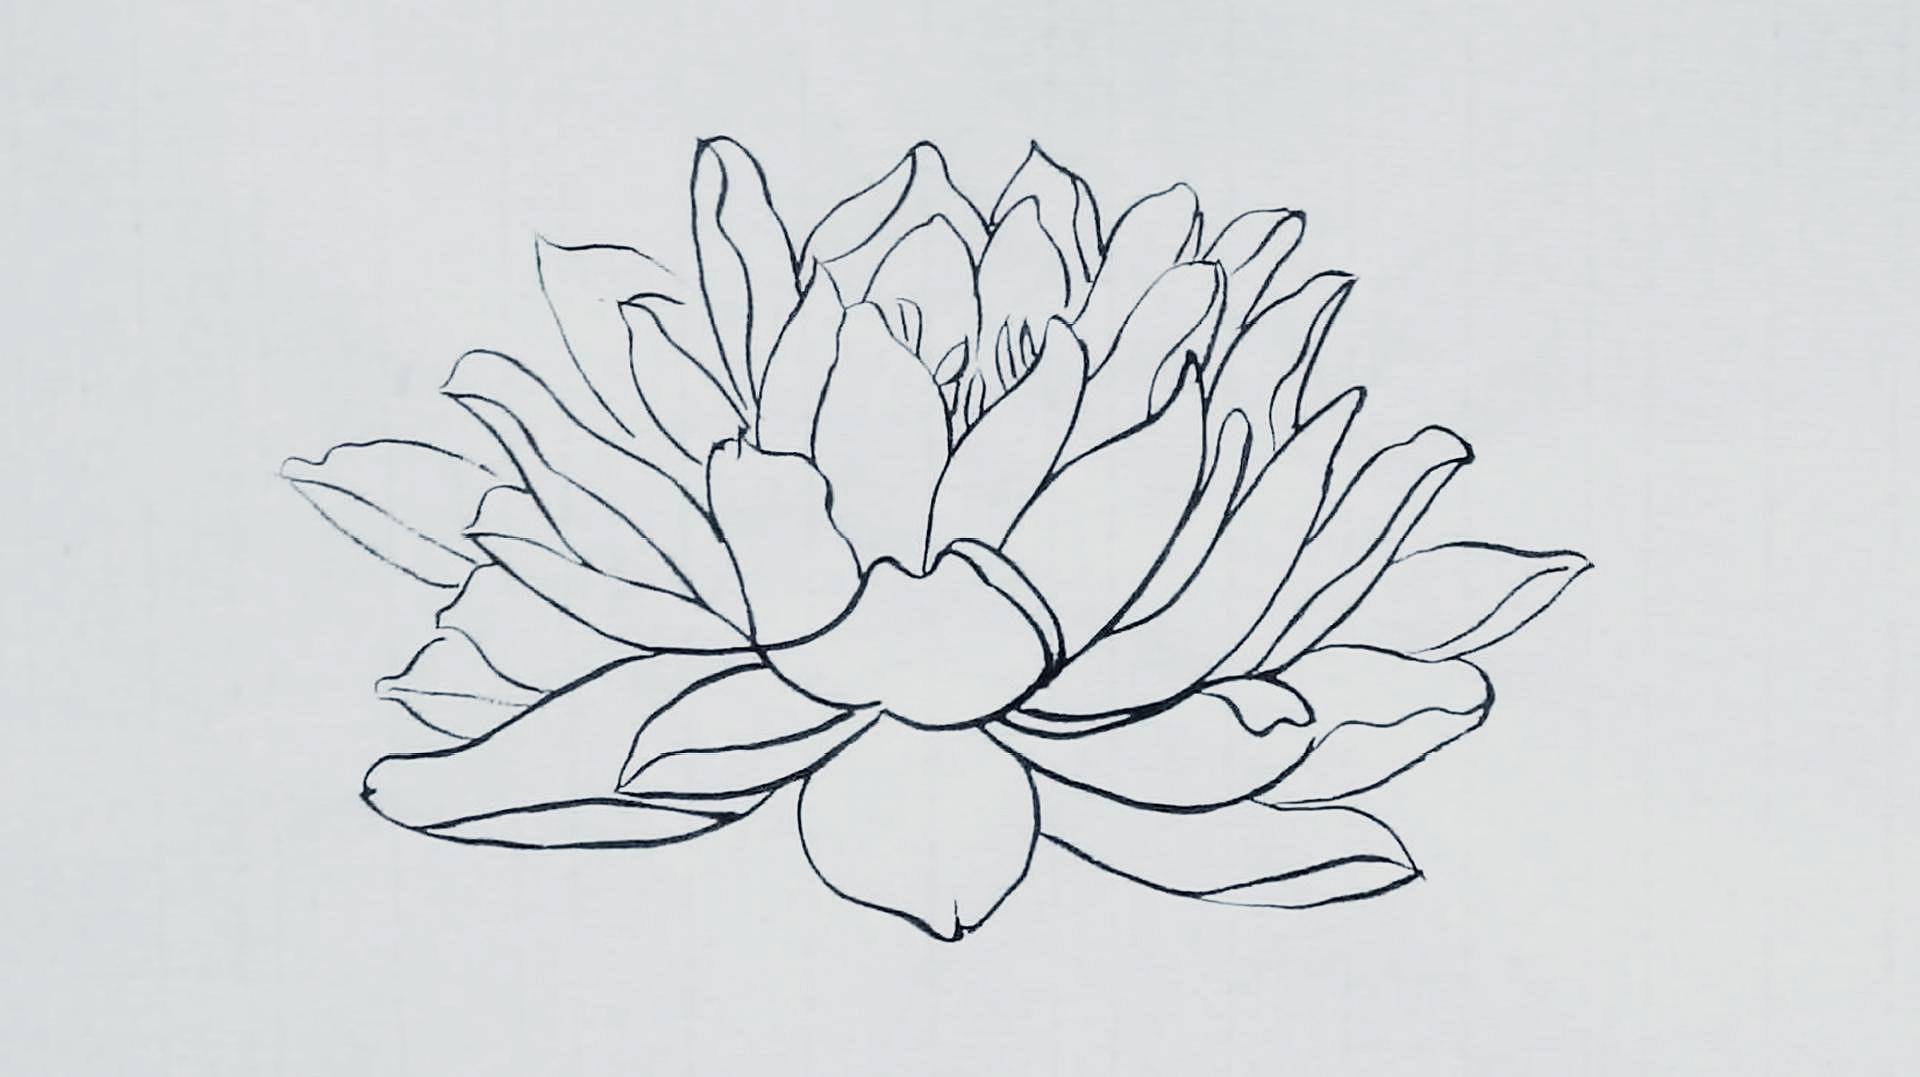 水莲花画法图片